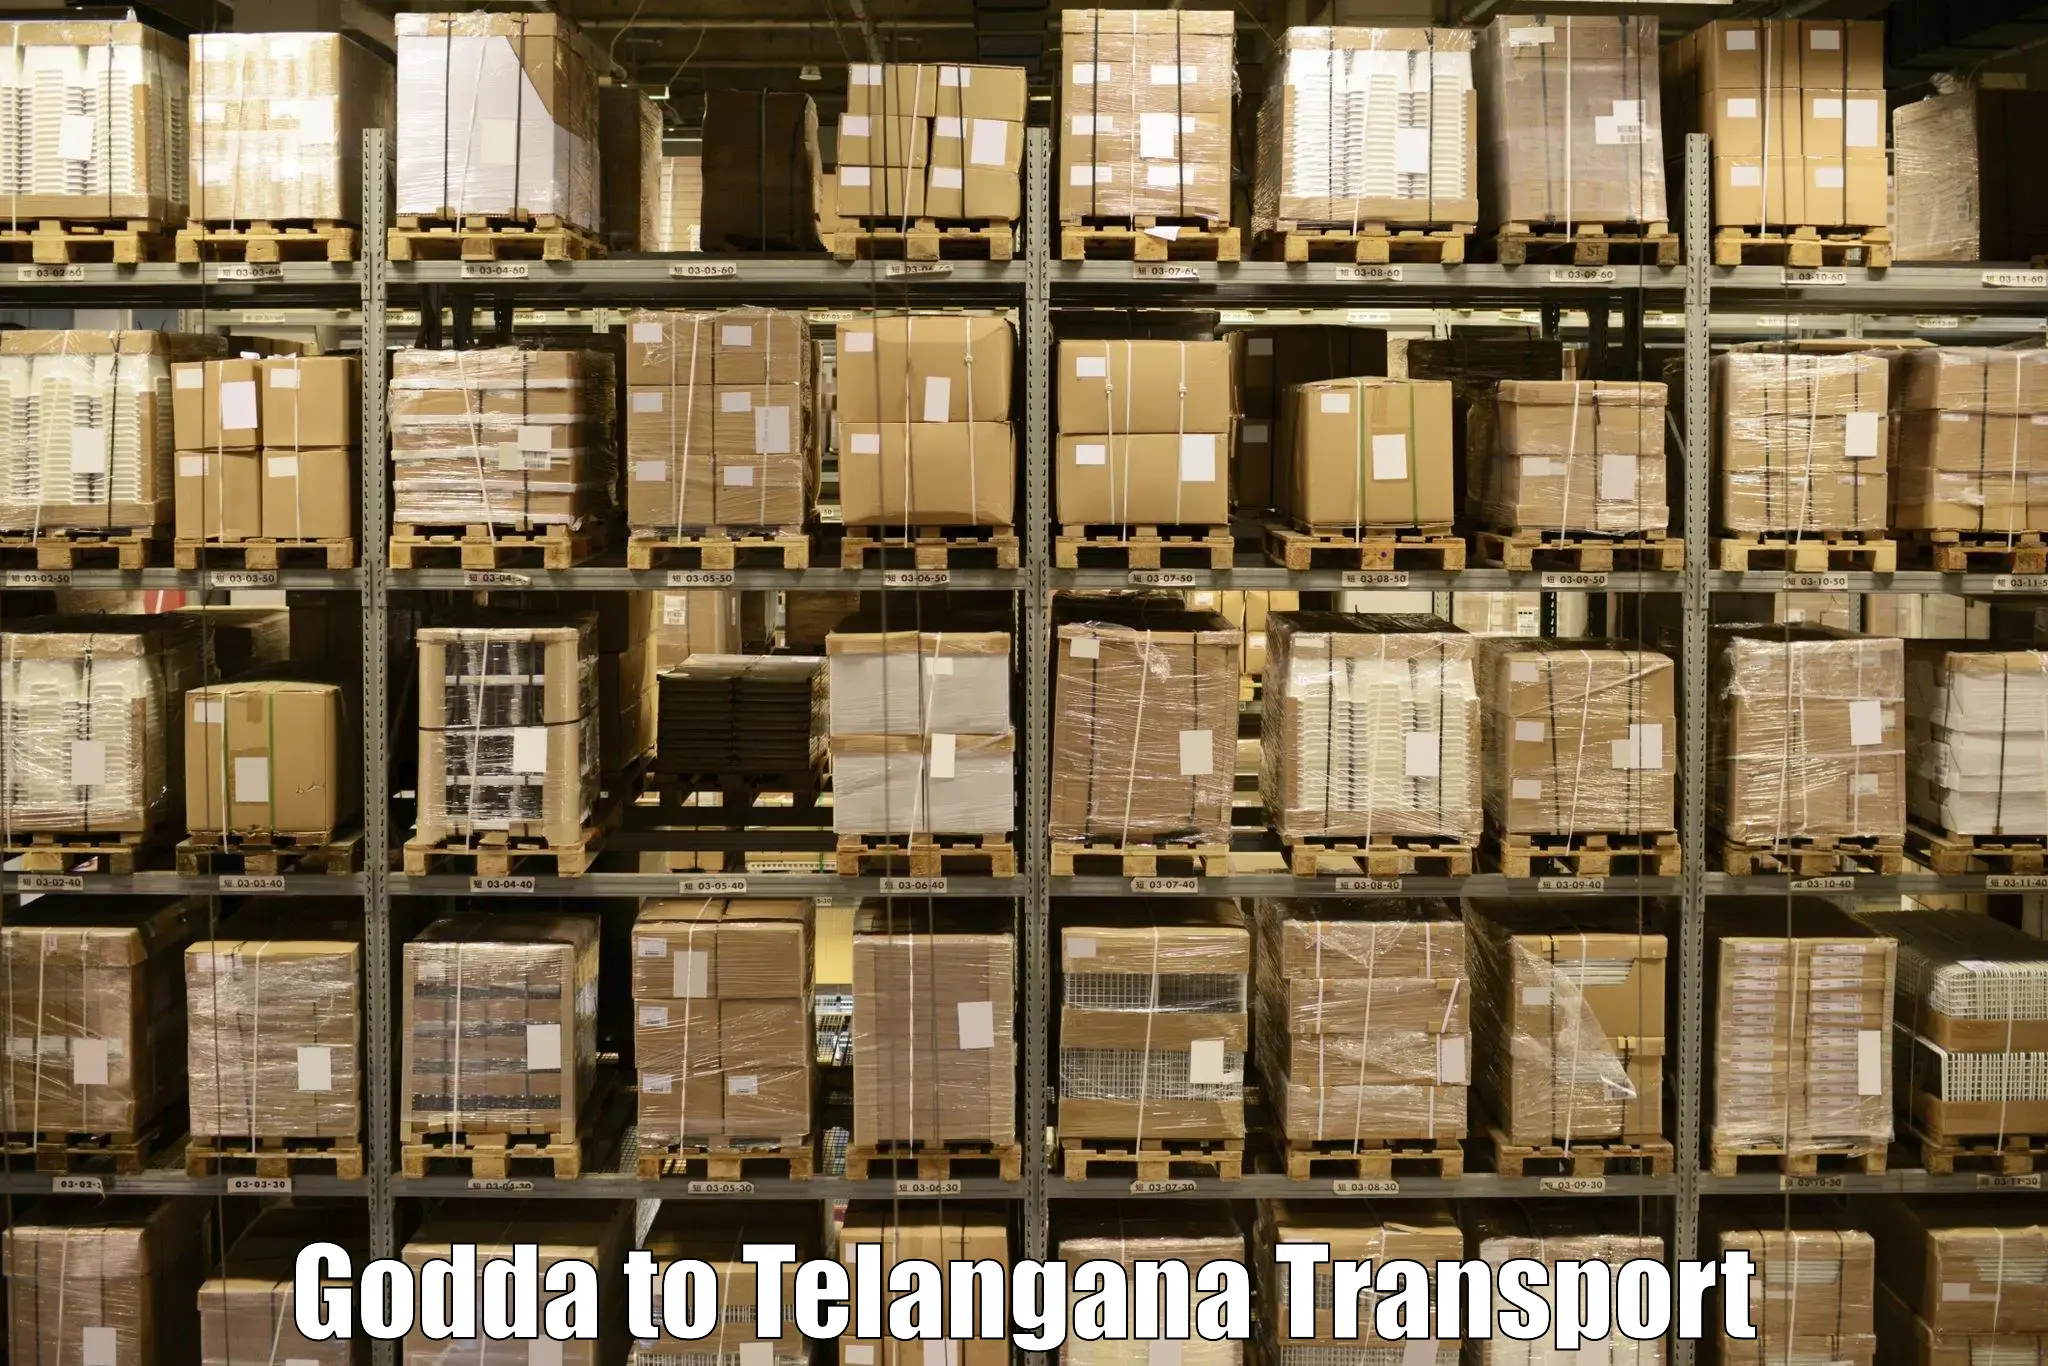 Delivery service Godda to Manneguda